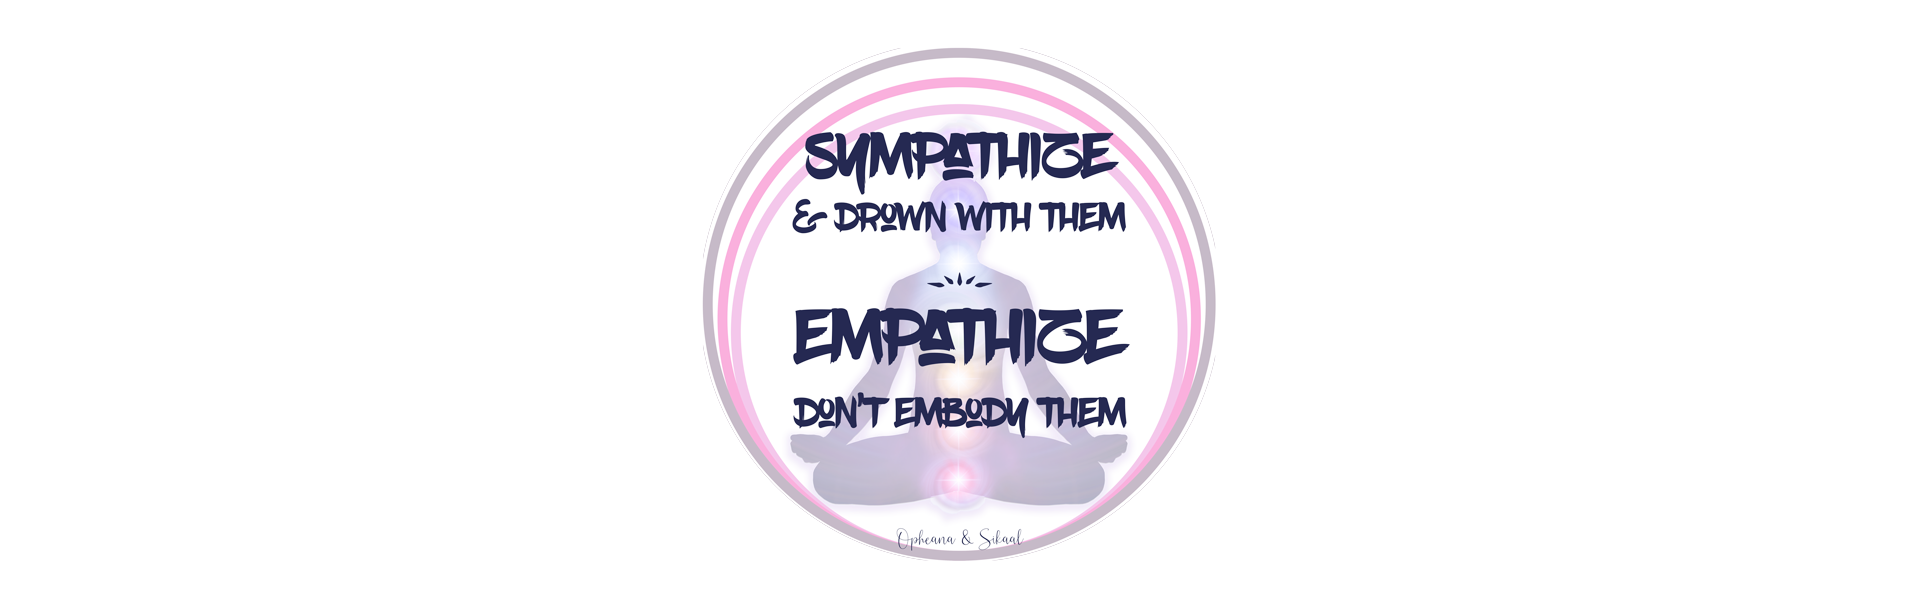 Empathy or Sympathy?